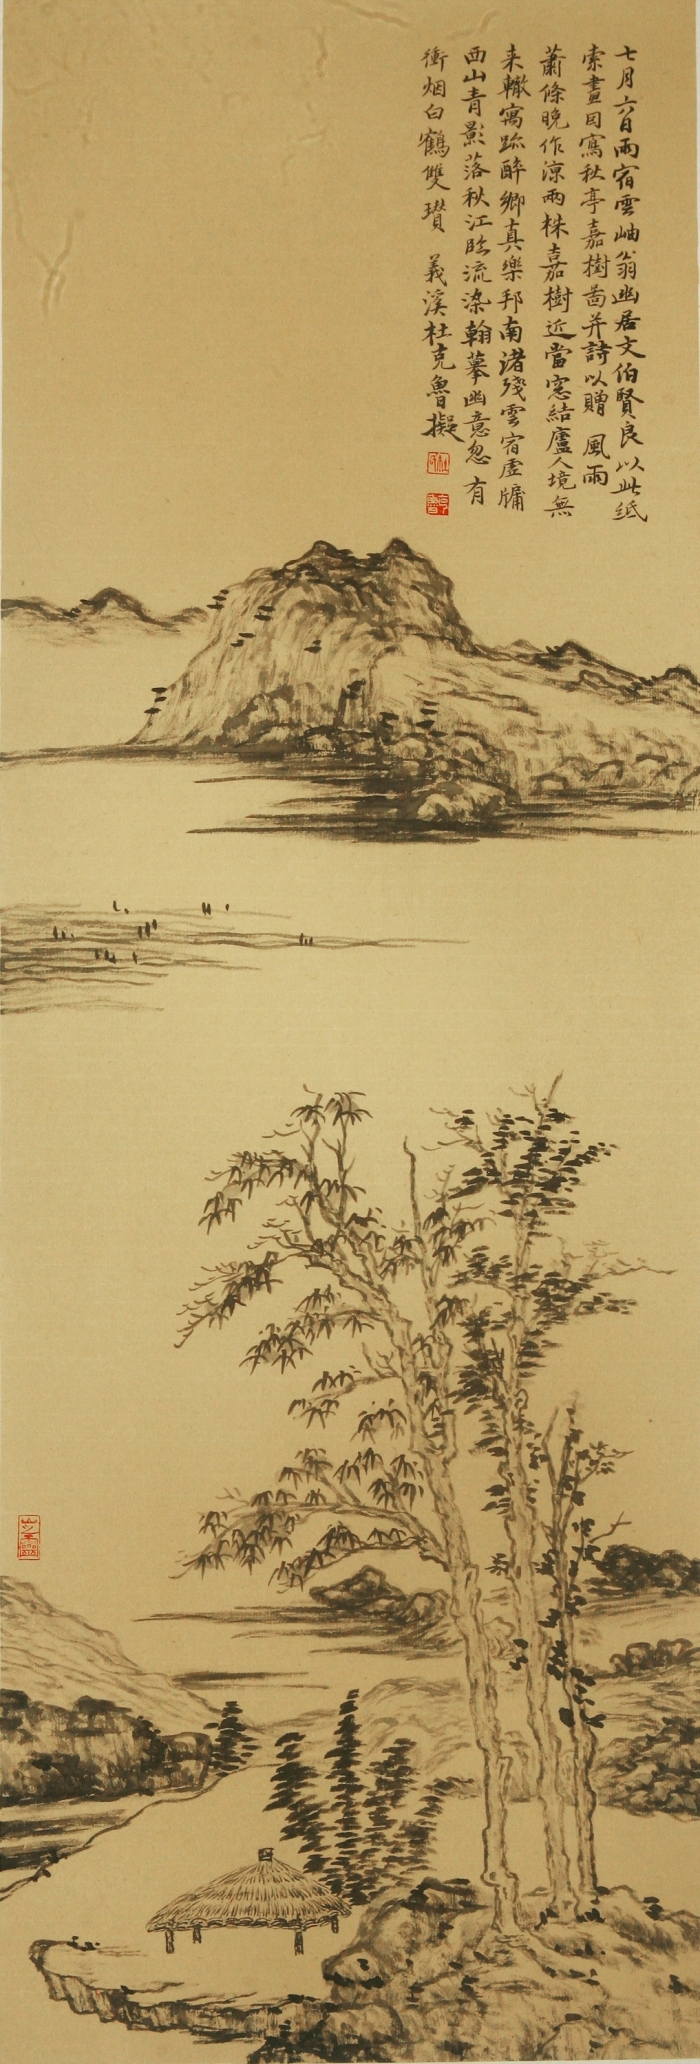 Galerie Fenghe Tang Chinesische Kunst - Der frühe Gebrauch für Heute 4